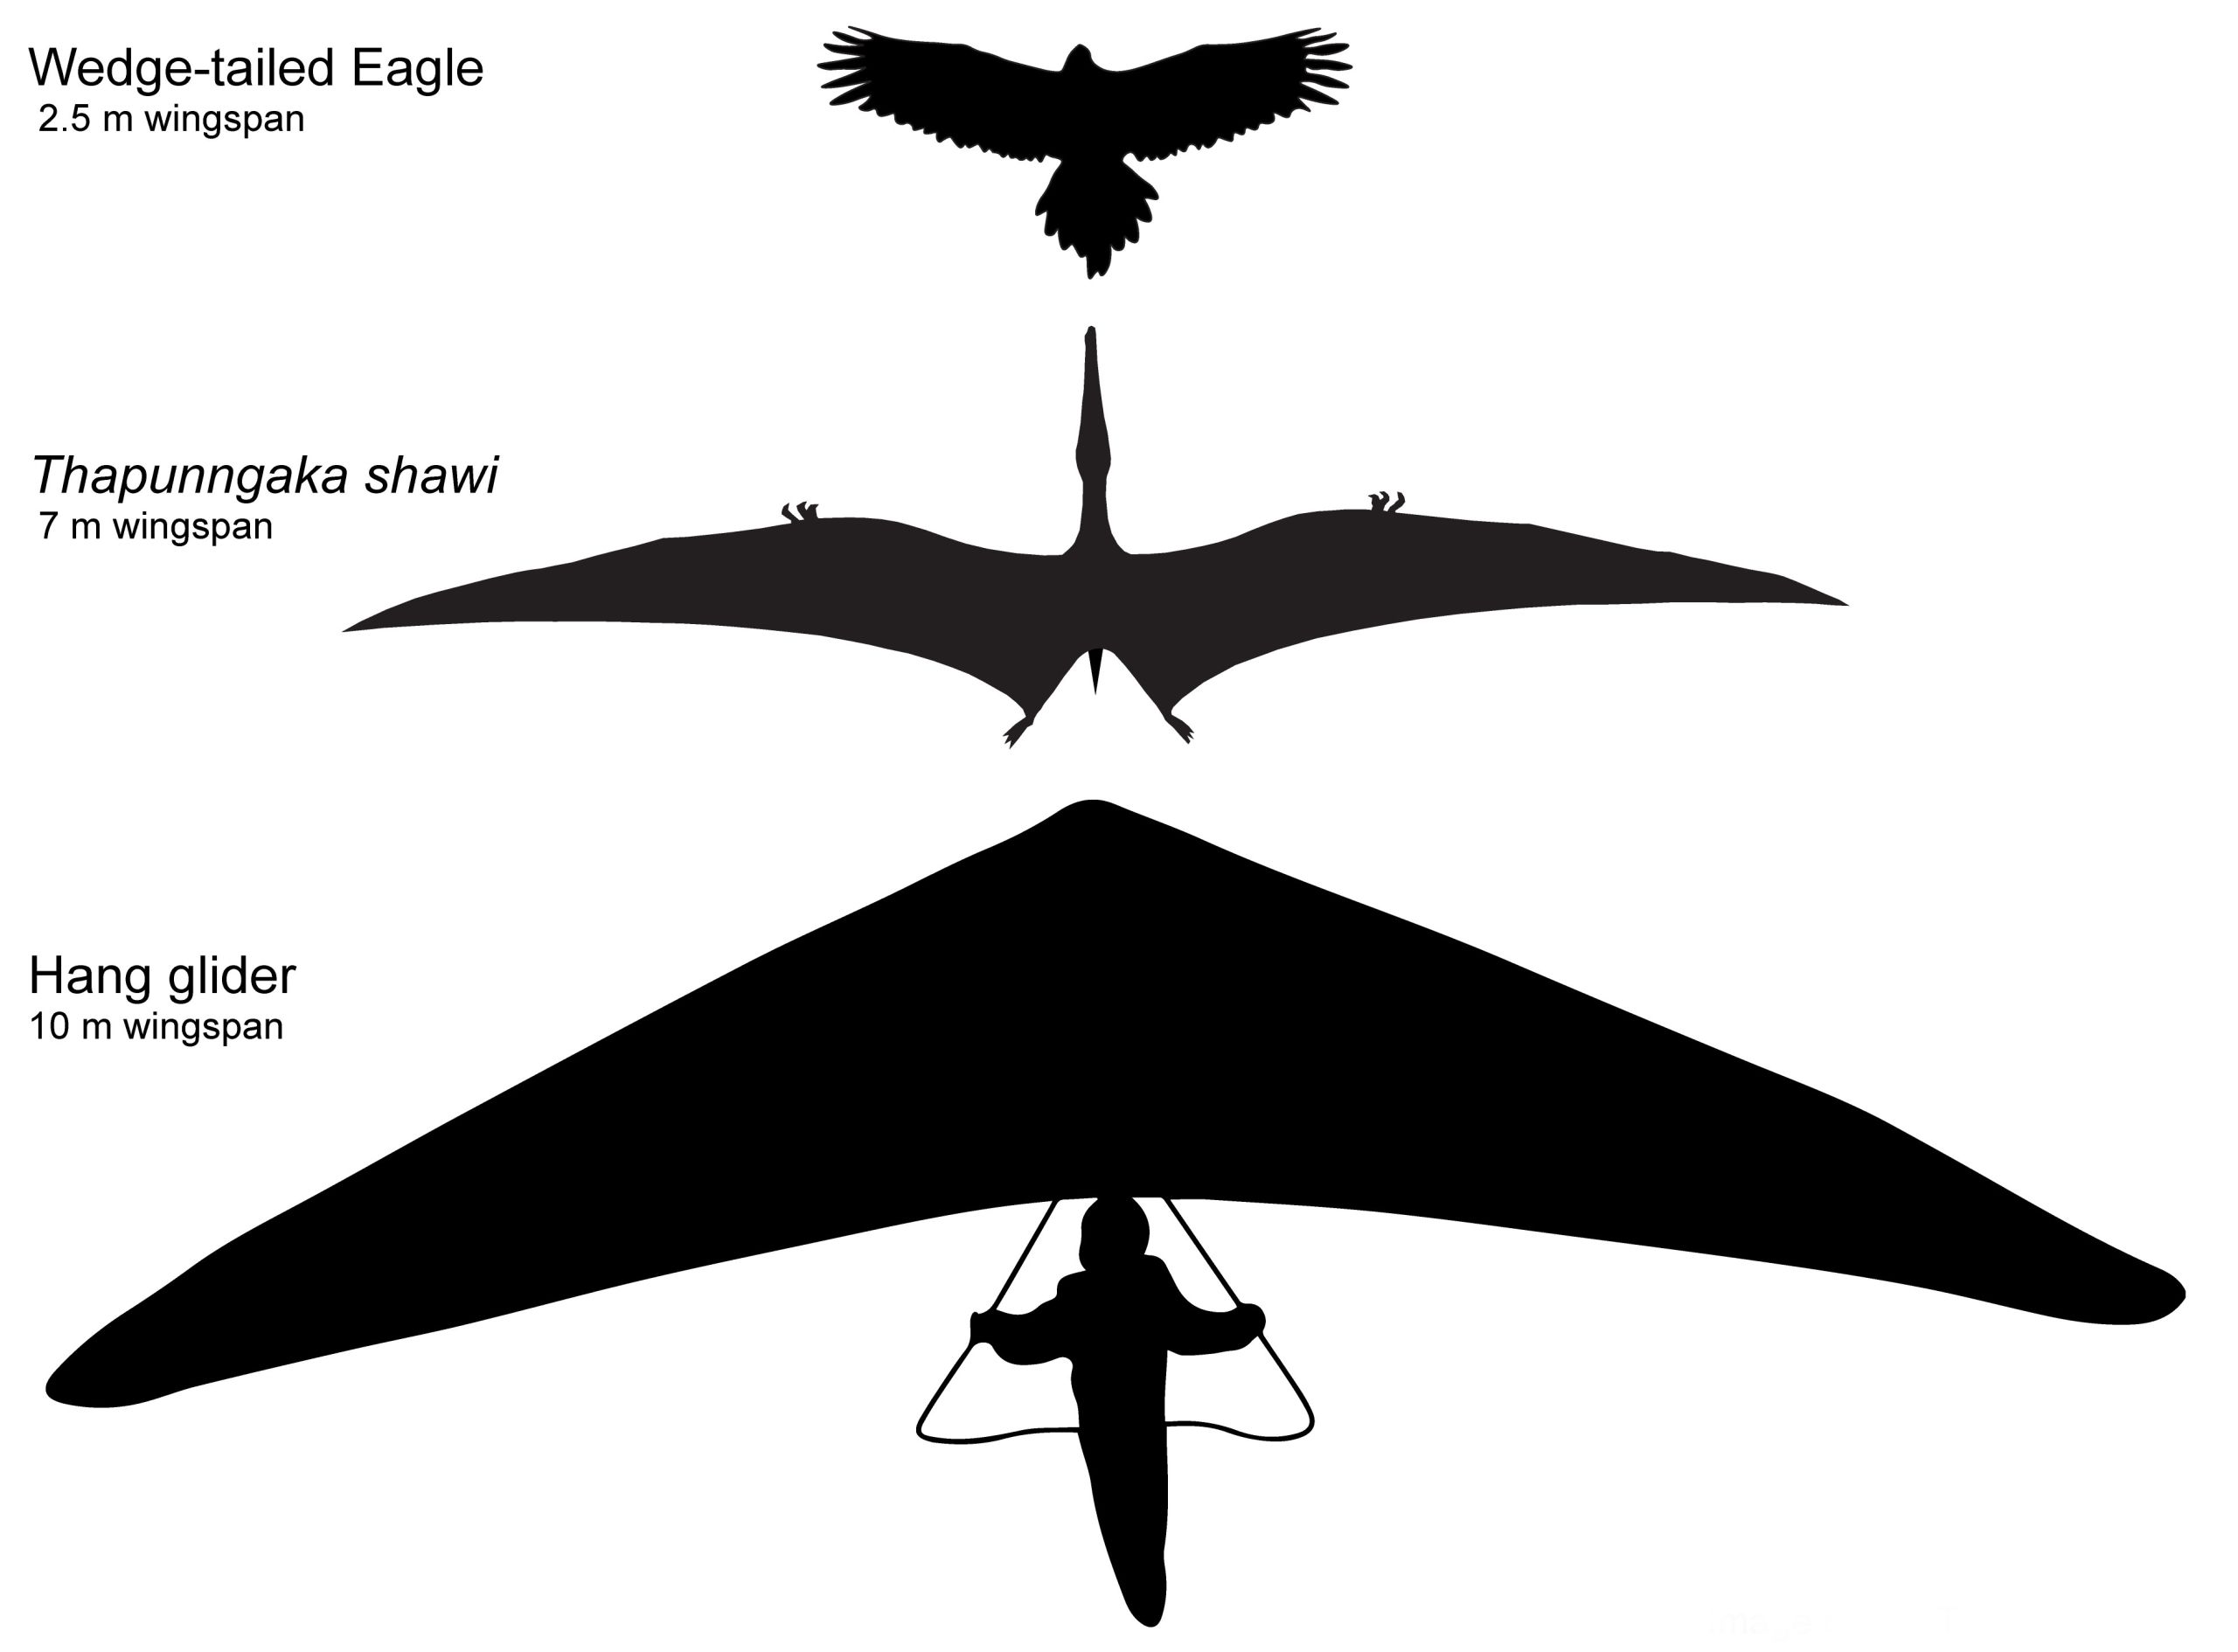 Garis hipotetis Thapunngaka shawi dengan lebar sayap 7 m, di samping elang ekor baji (lebar sayap 2.5 m) dan pesawat layang gantung ('lebar sayap' 10 m). Tim Richards